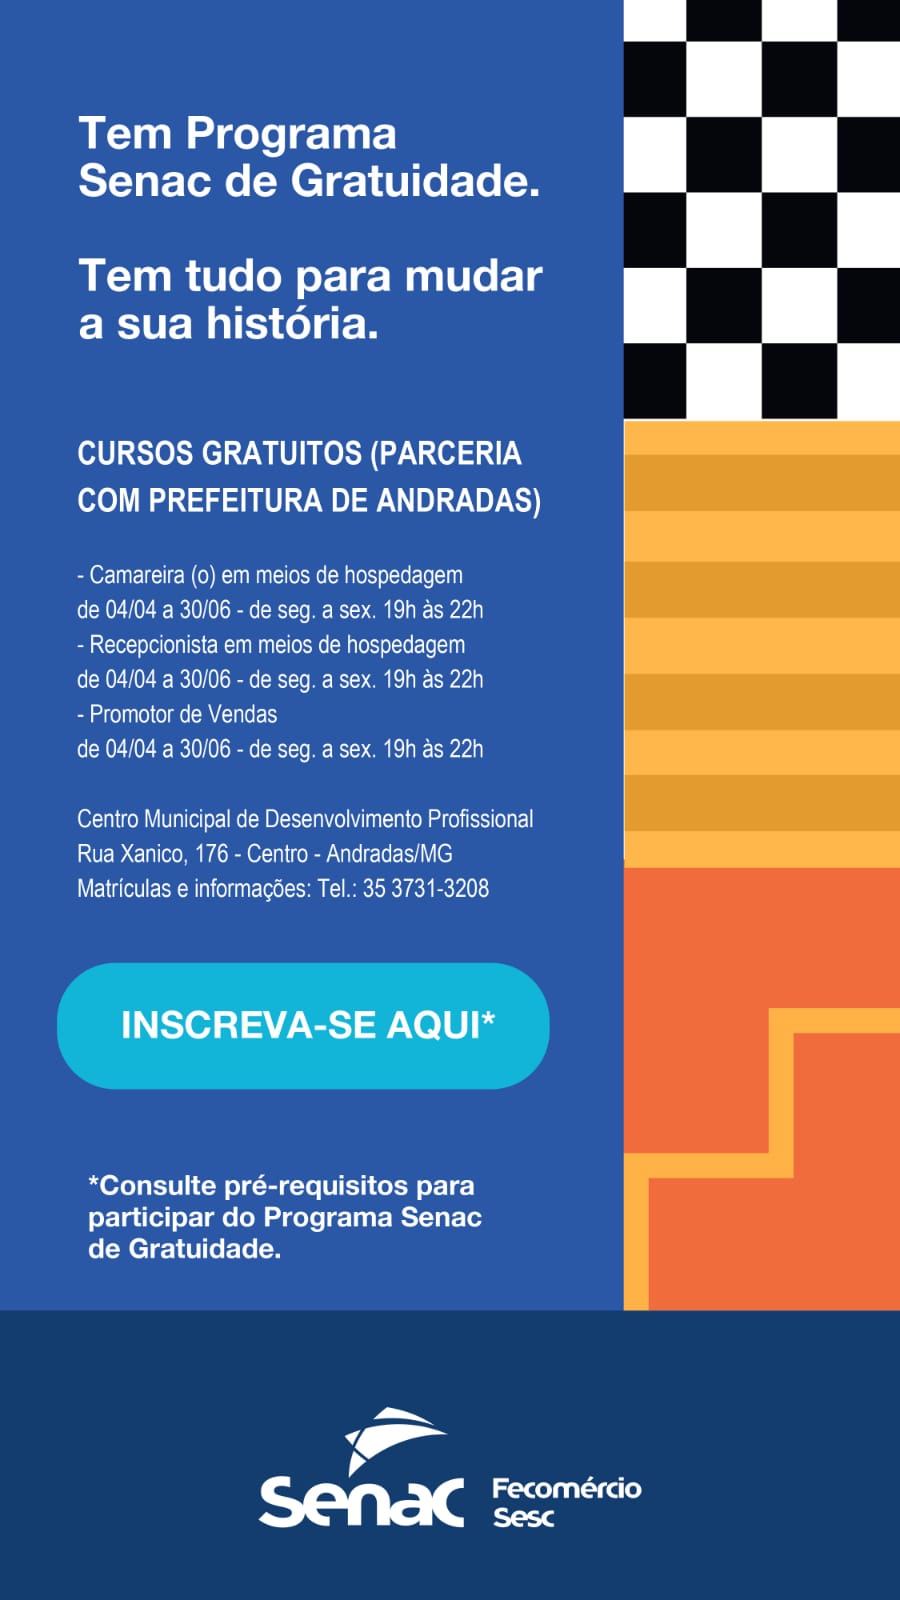 QUALIFICAÇÃO PROFISSIONAL: PREFEITURA DE ANDRADAS OFERECE OPORTUNIDADES DE APRENDIZAGEM